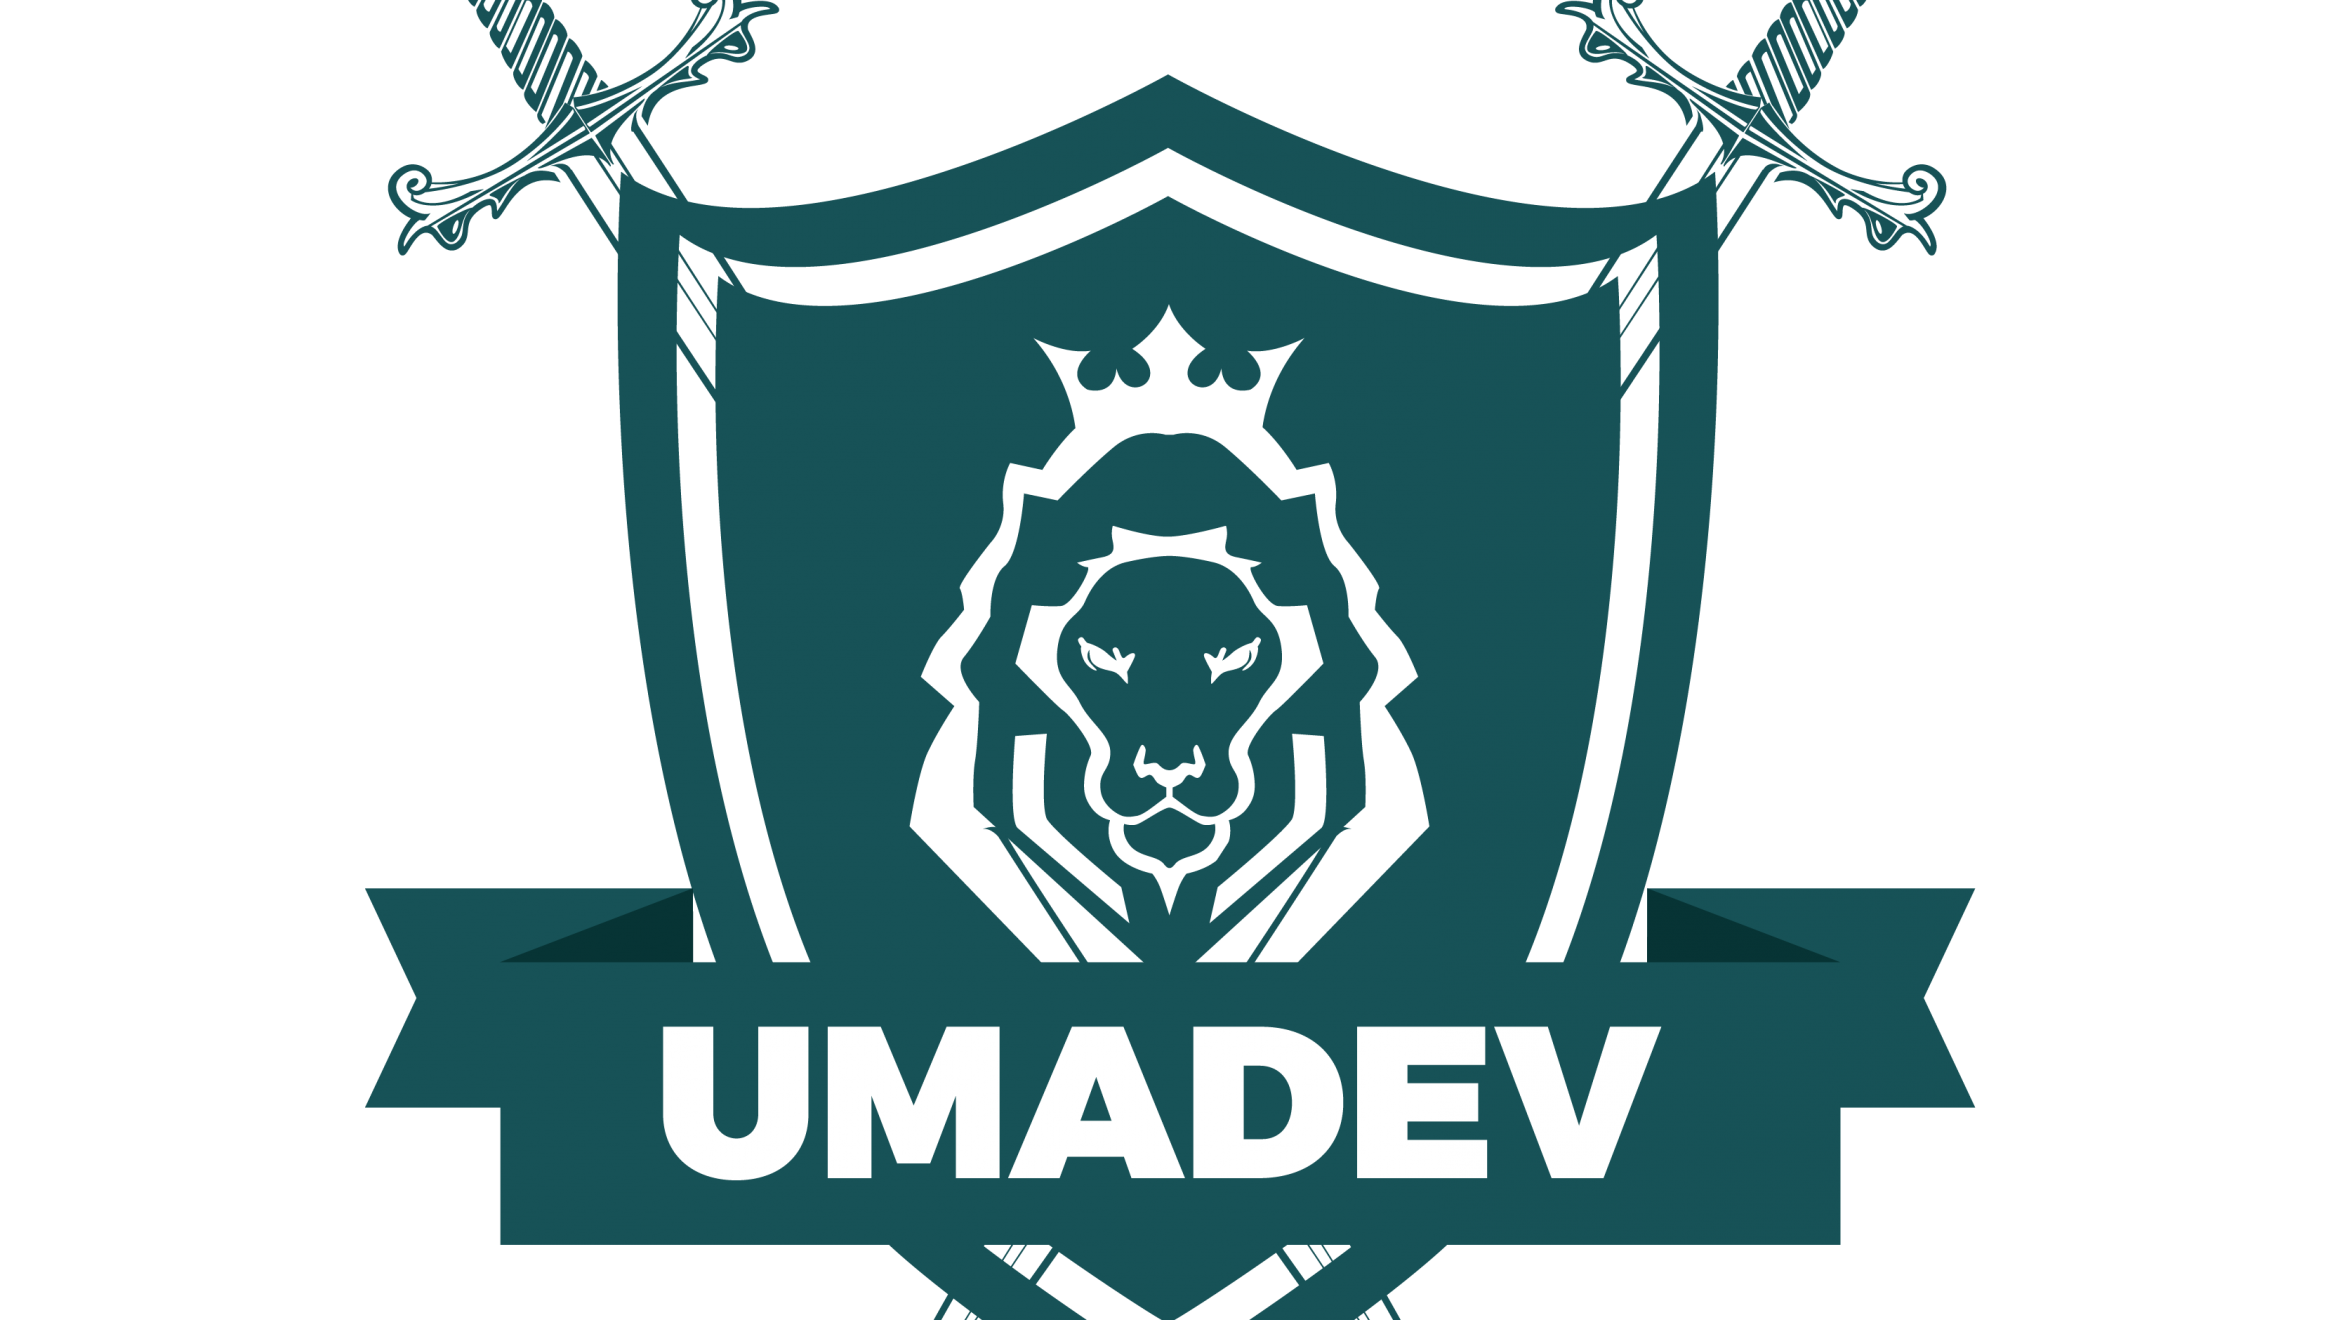 UMADEV